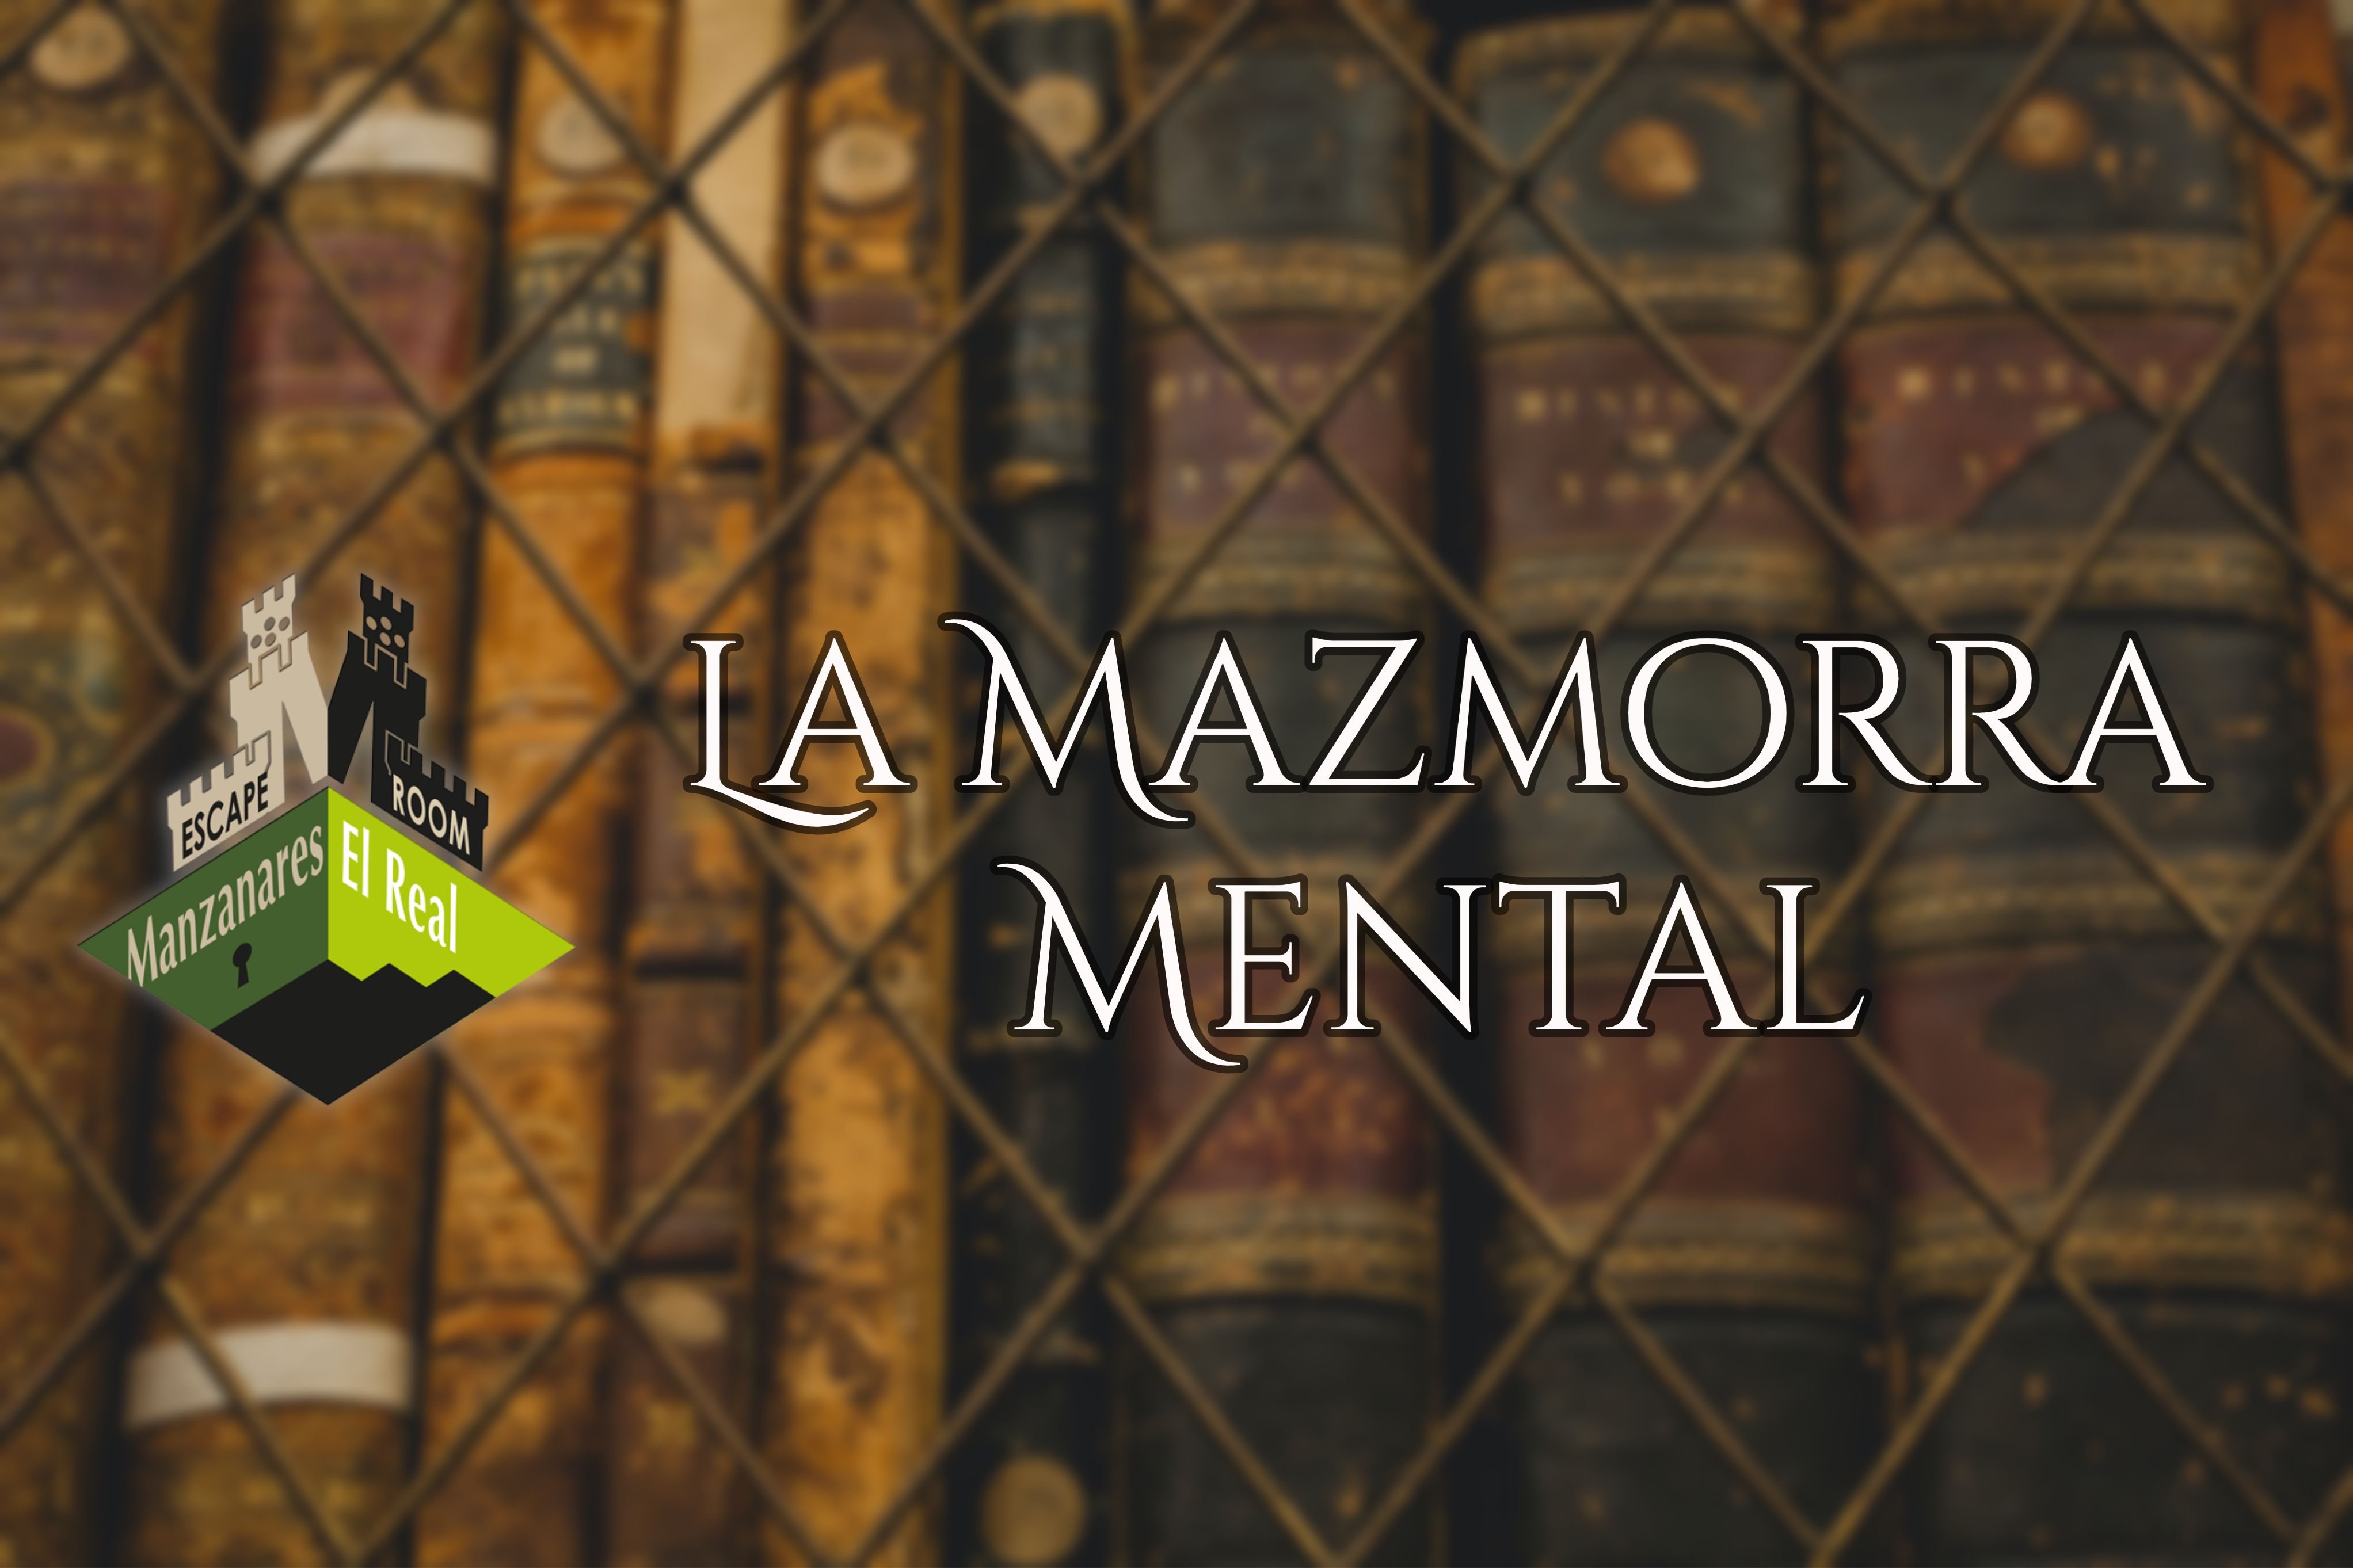 La Mazmorra Mental - Manzanares el Real - Review Escape Room